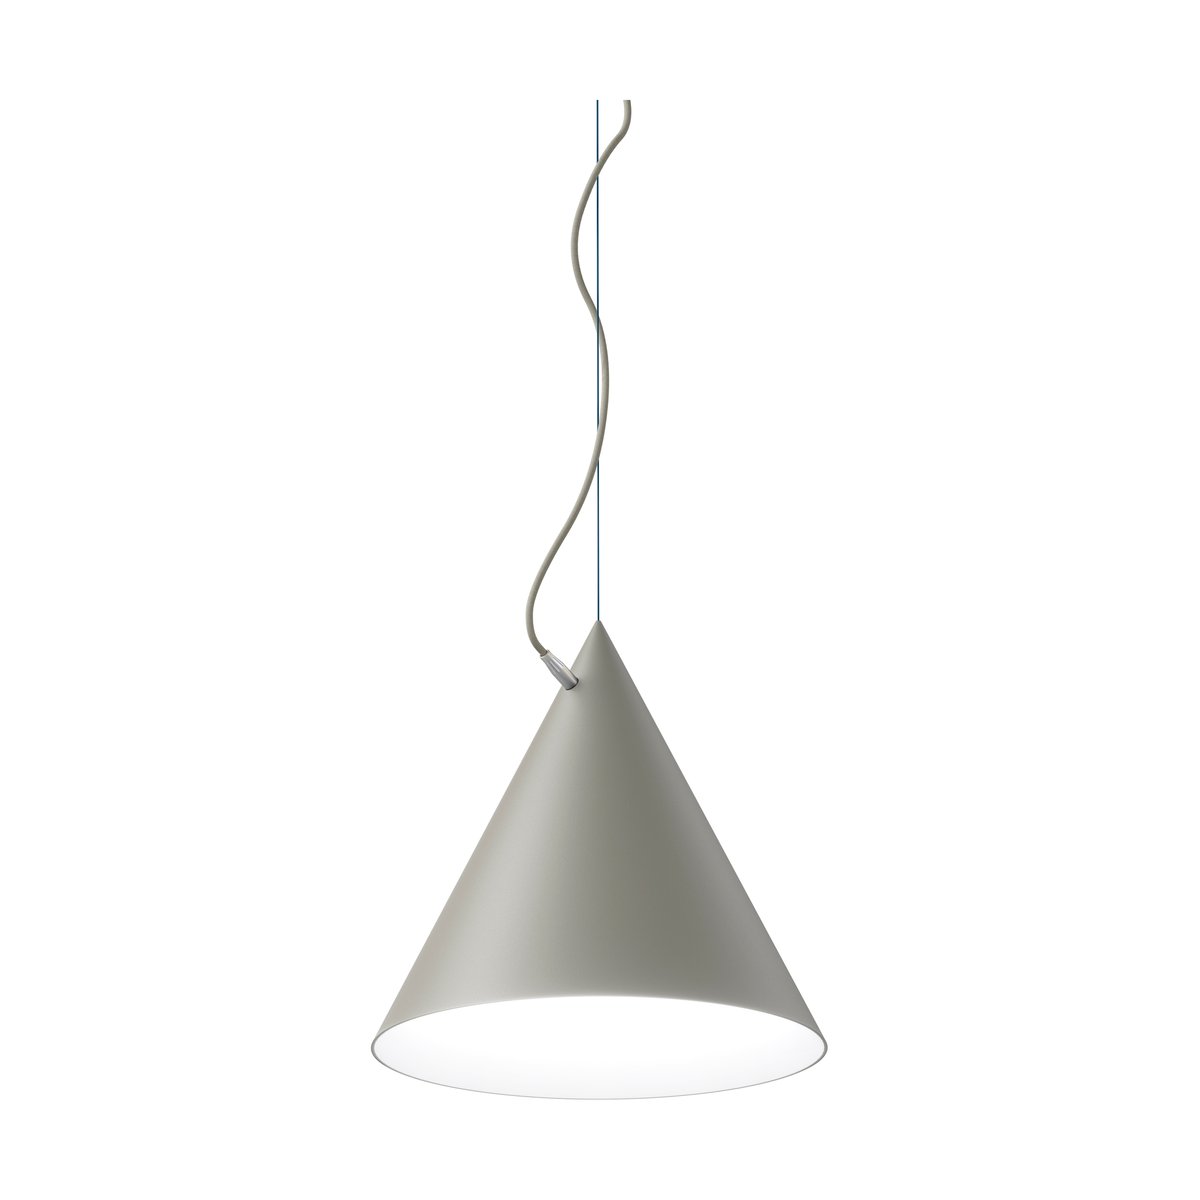 Noon Castor hanglamp 40 cm Grijs-lichtgrijs-zilver